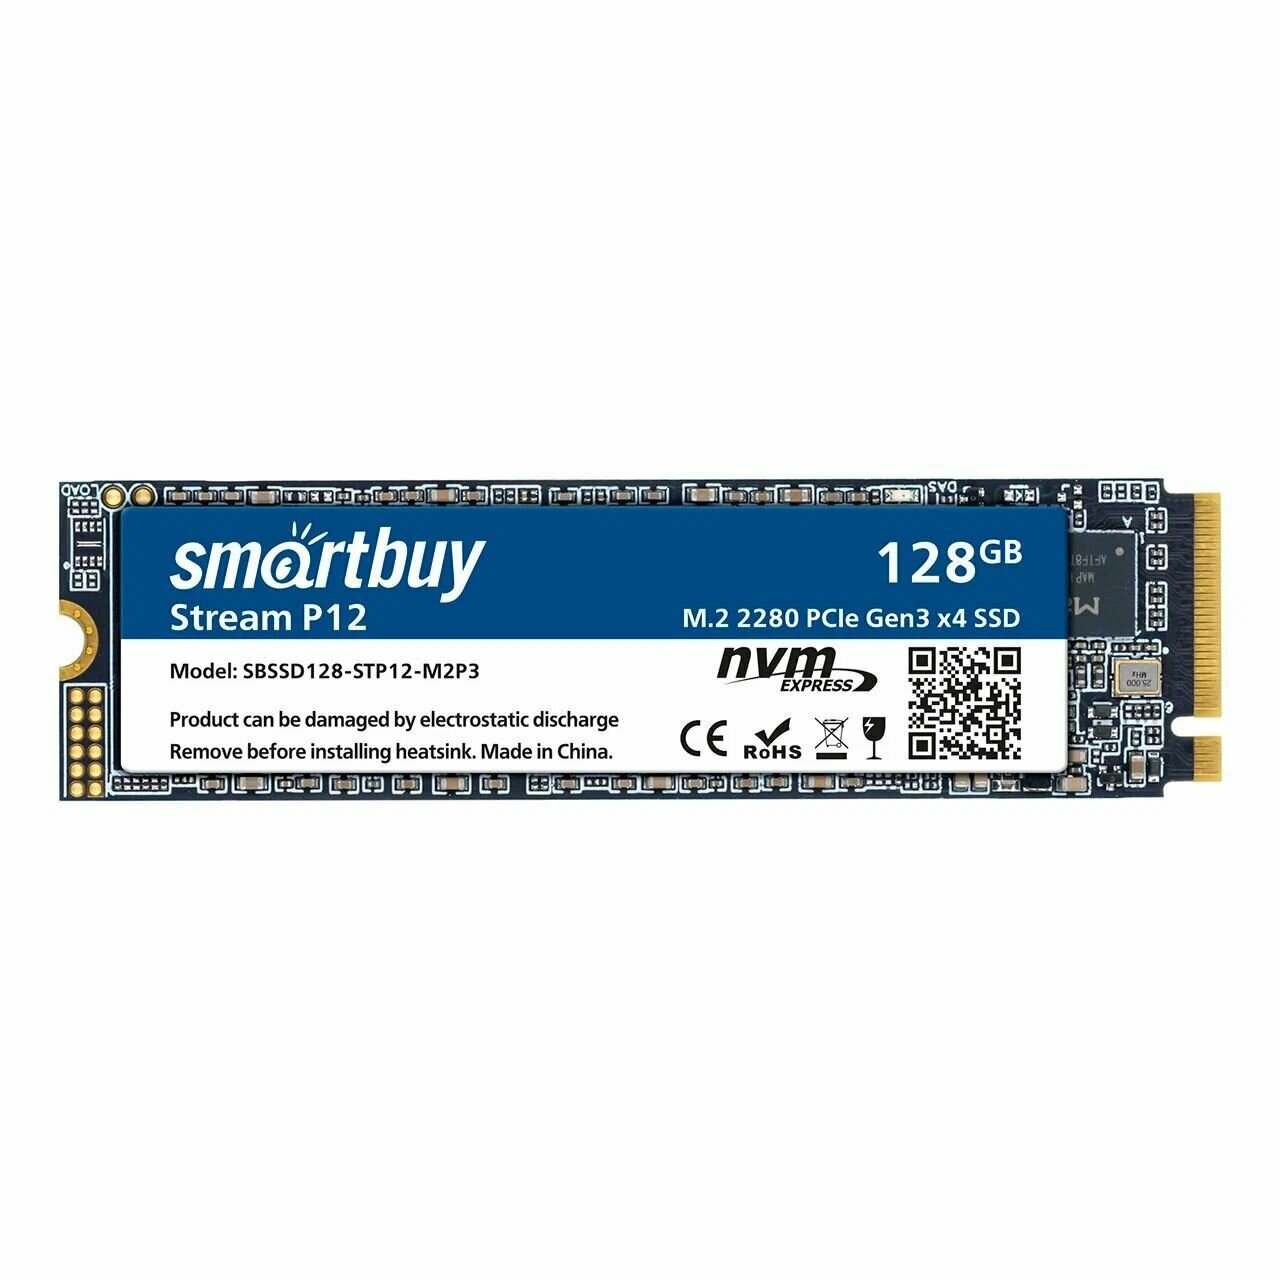 Smartbuy M.2 2280 SSD Stream P12L 128GB (1700/700) OEM pack SBSSD128-STP12L-M2P3